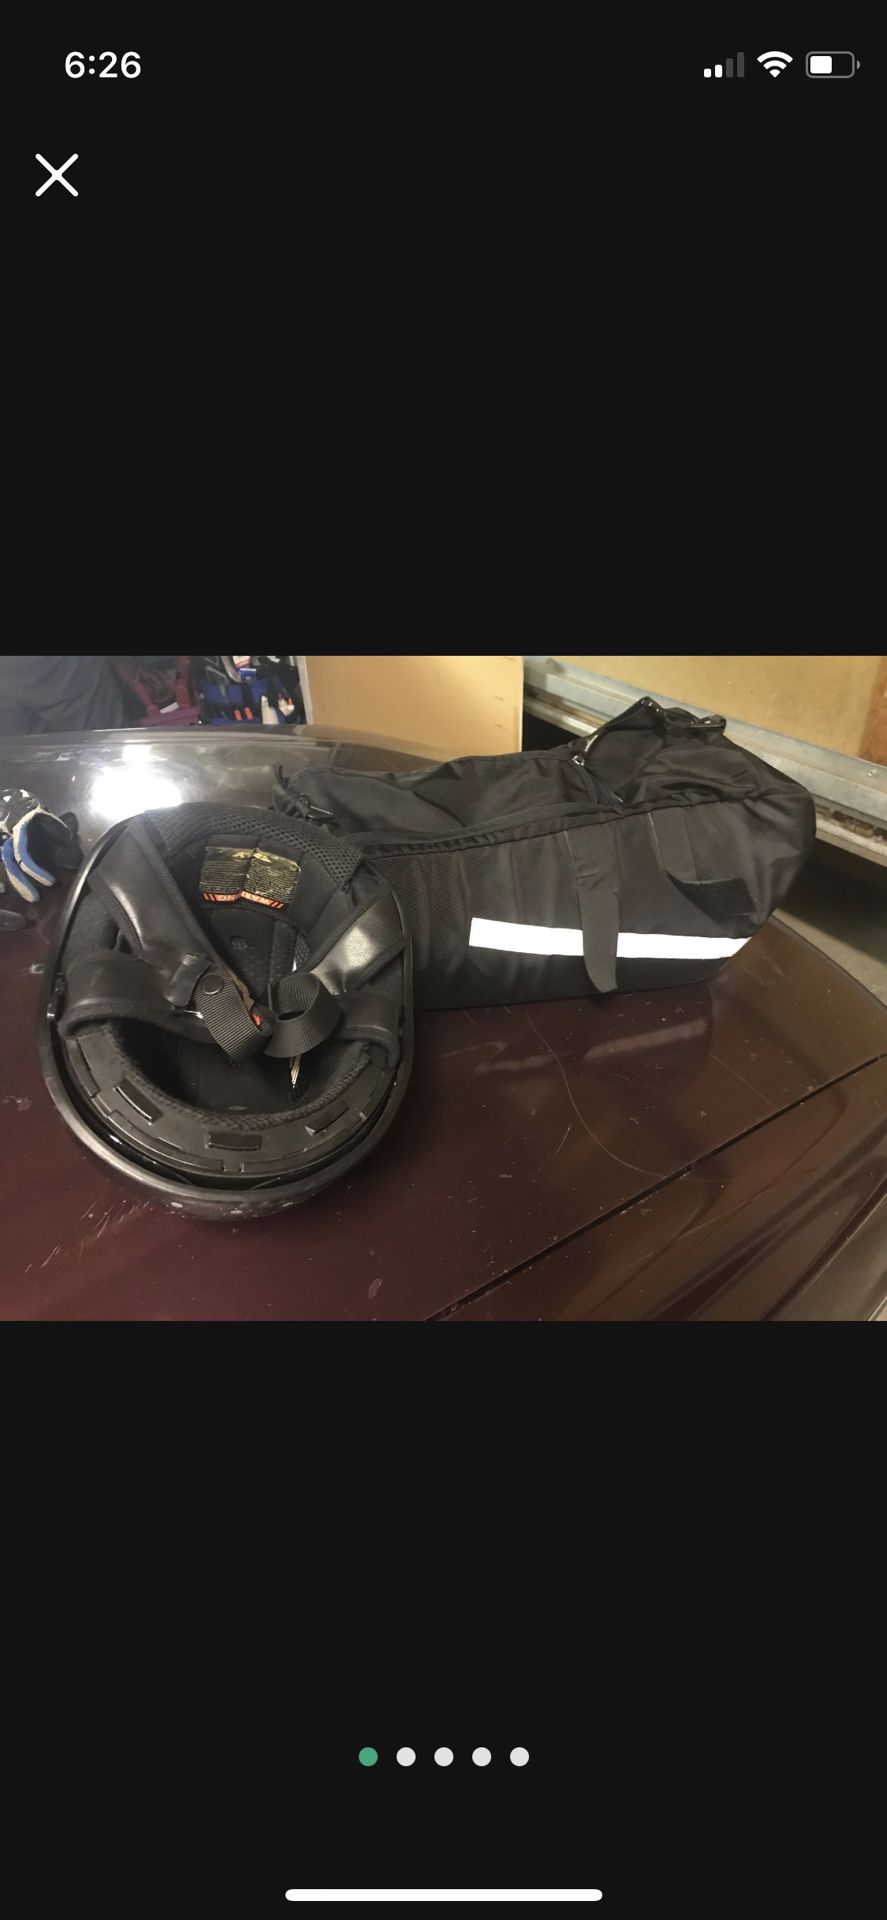 Honda ruckus bag and helmet